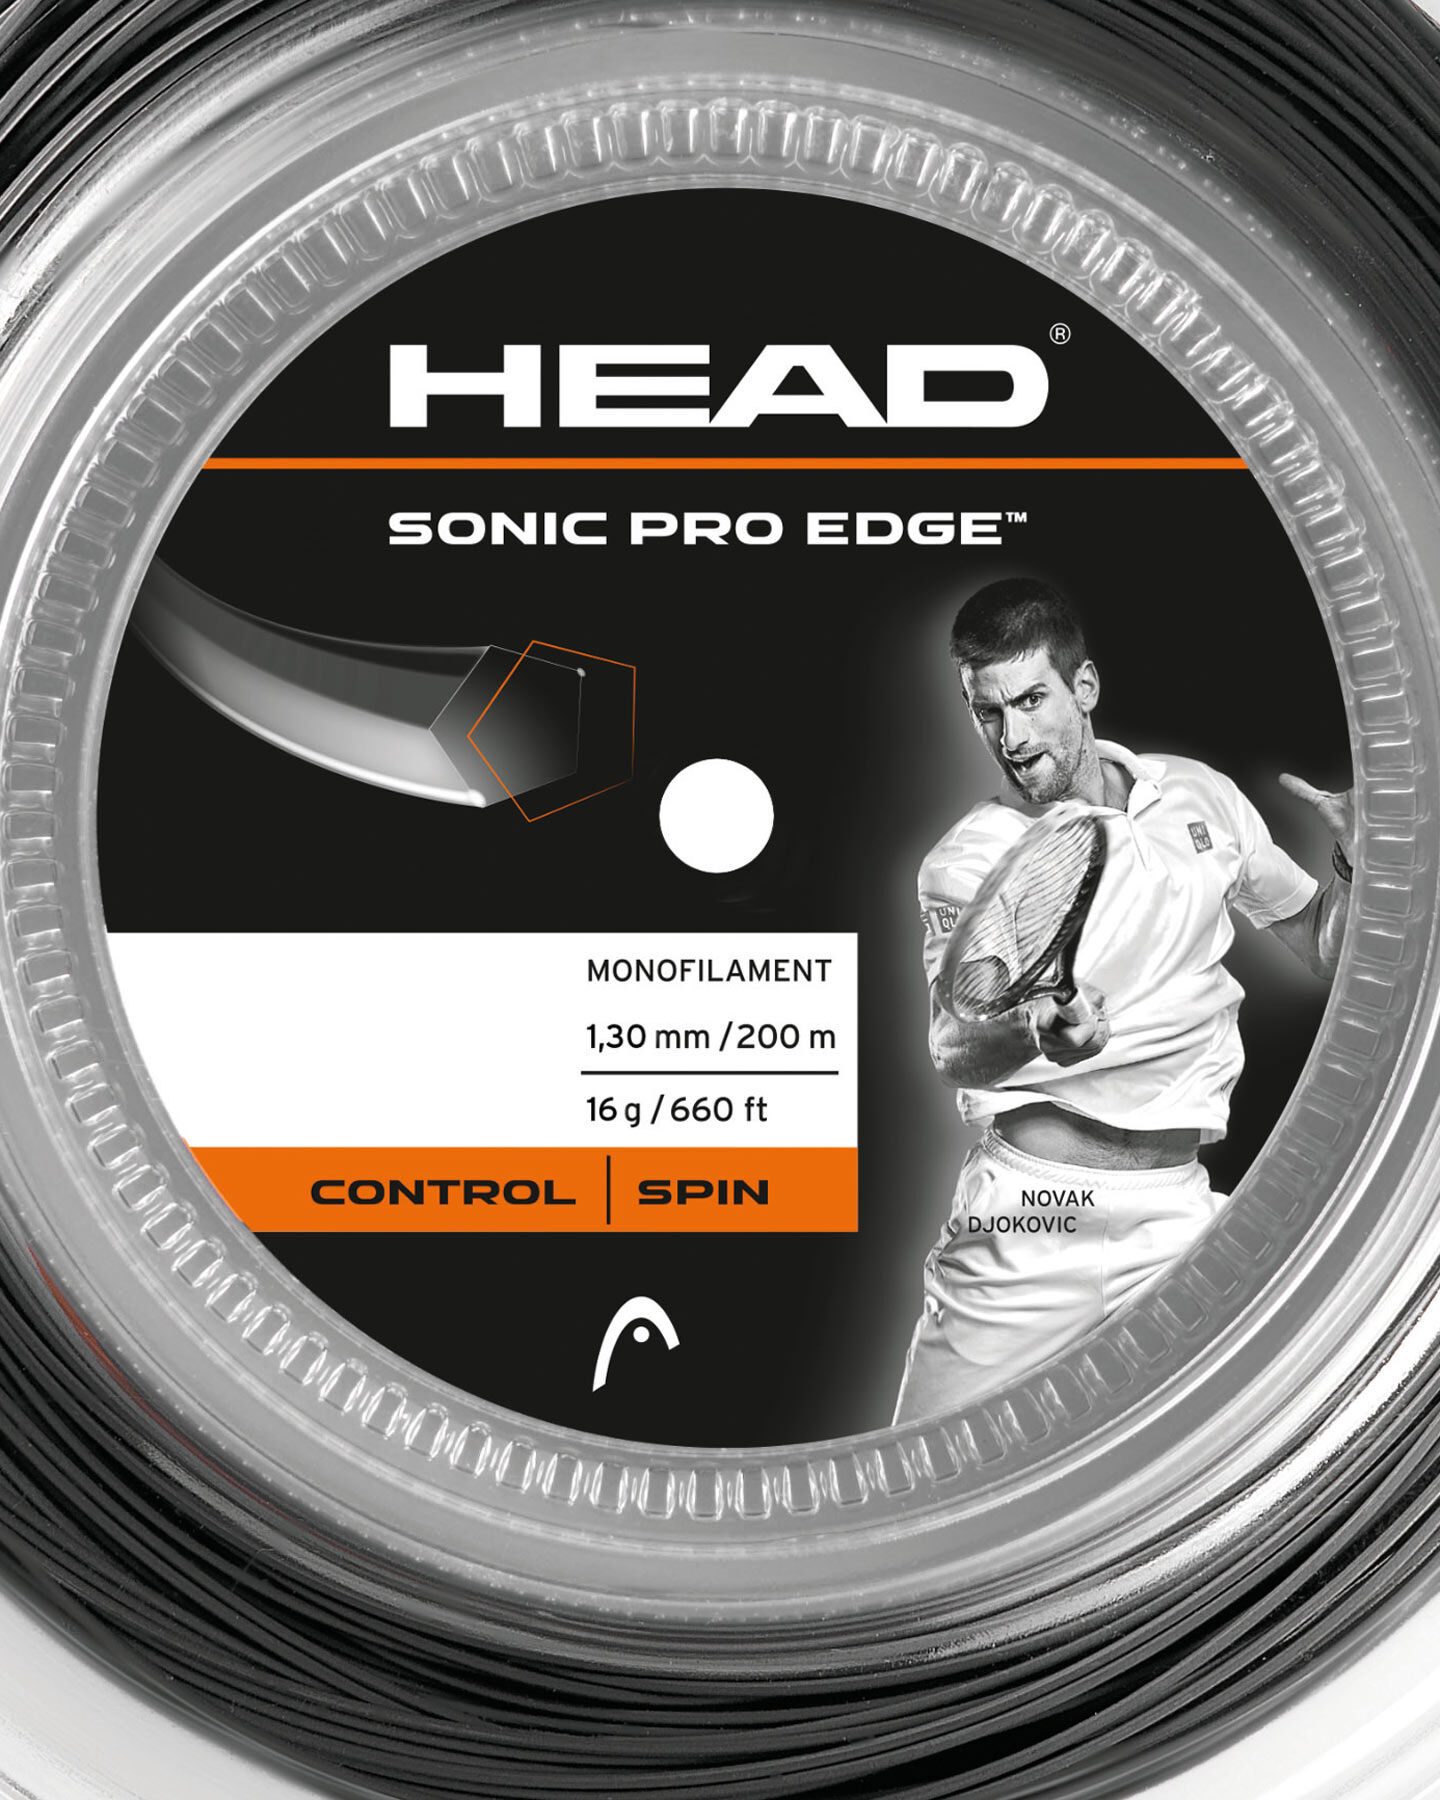  Corde tennis HEAD SONIC PRO EDGE S1263003|1|1,25 scatto 1